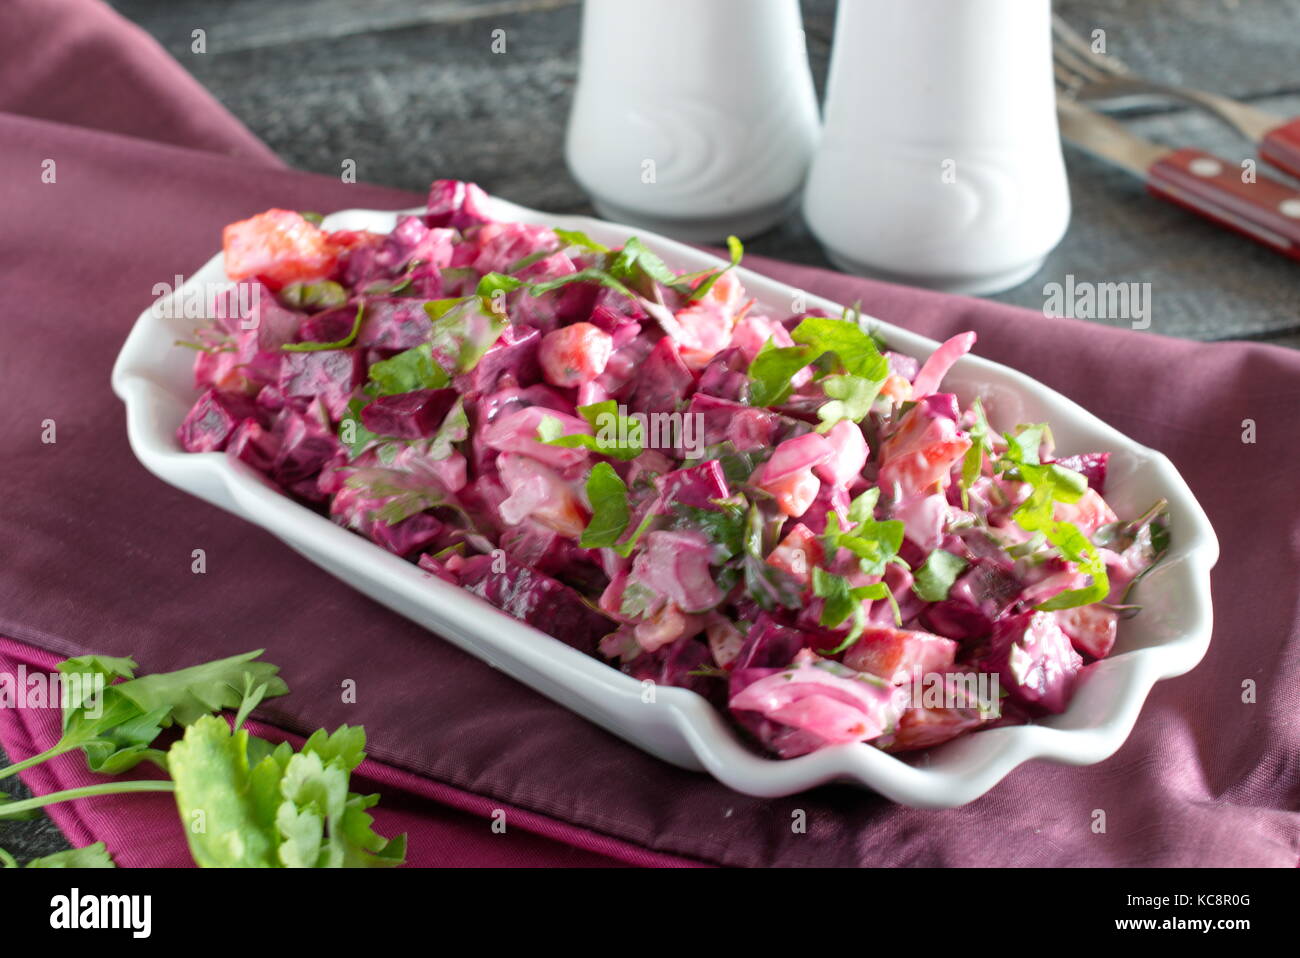 Salat mit gekochte rote Bete, Kartoffeln, Gurken, Zwiebeln in eine weiße Platte auf einer Textur Hintergrund Stockfoto